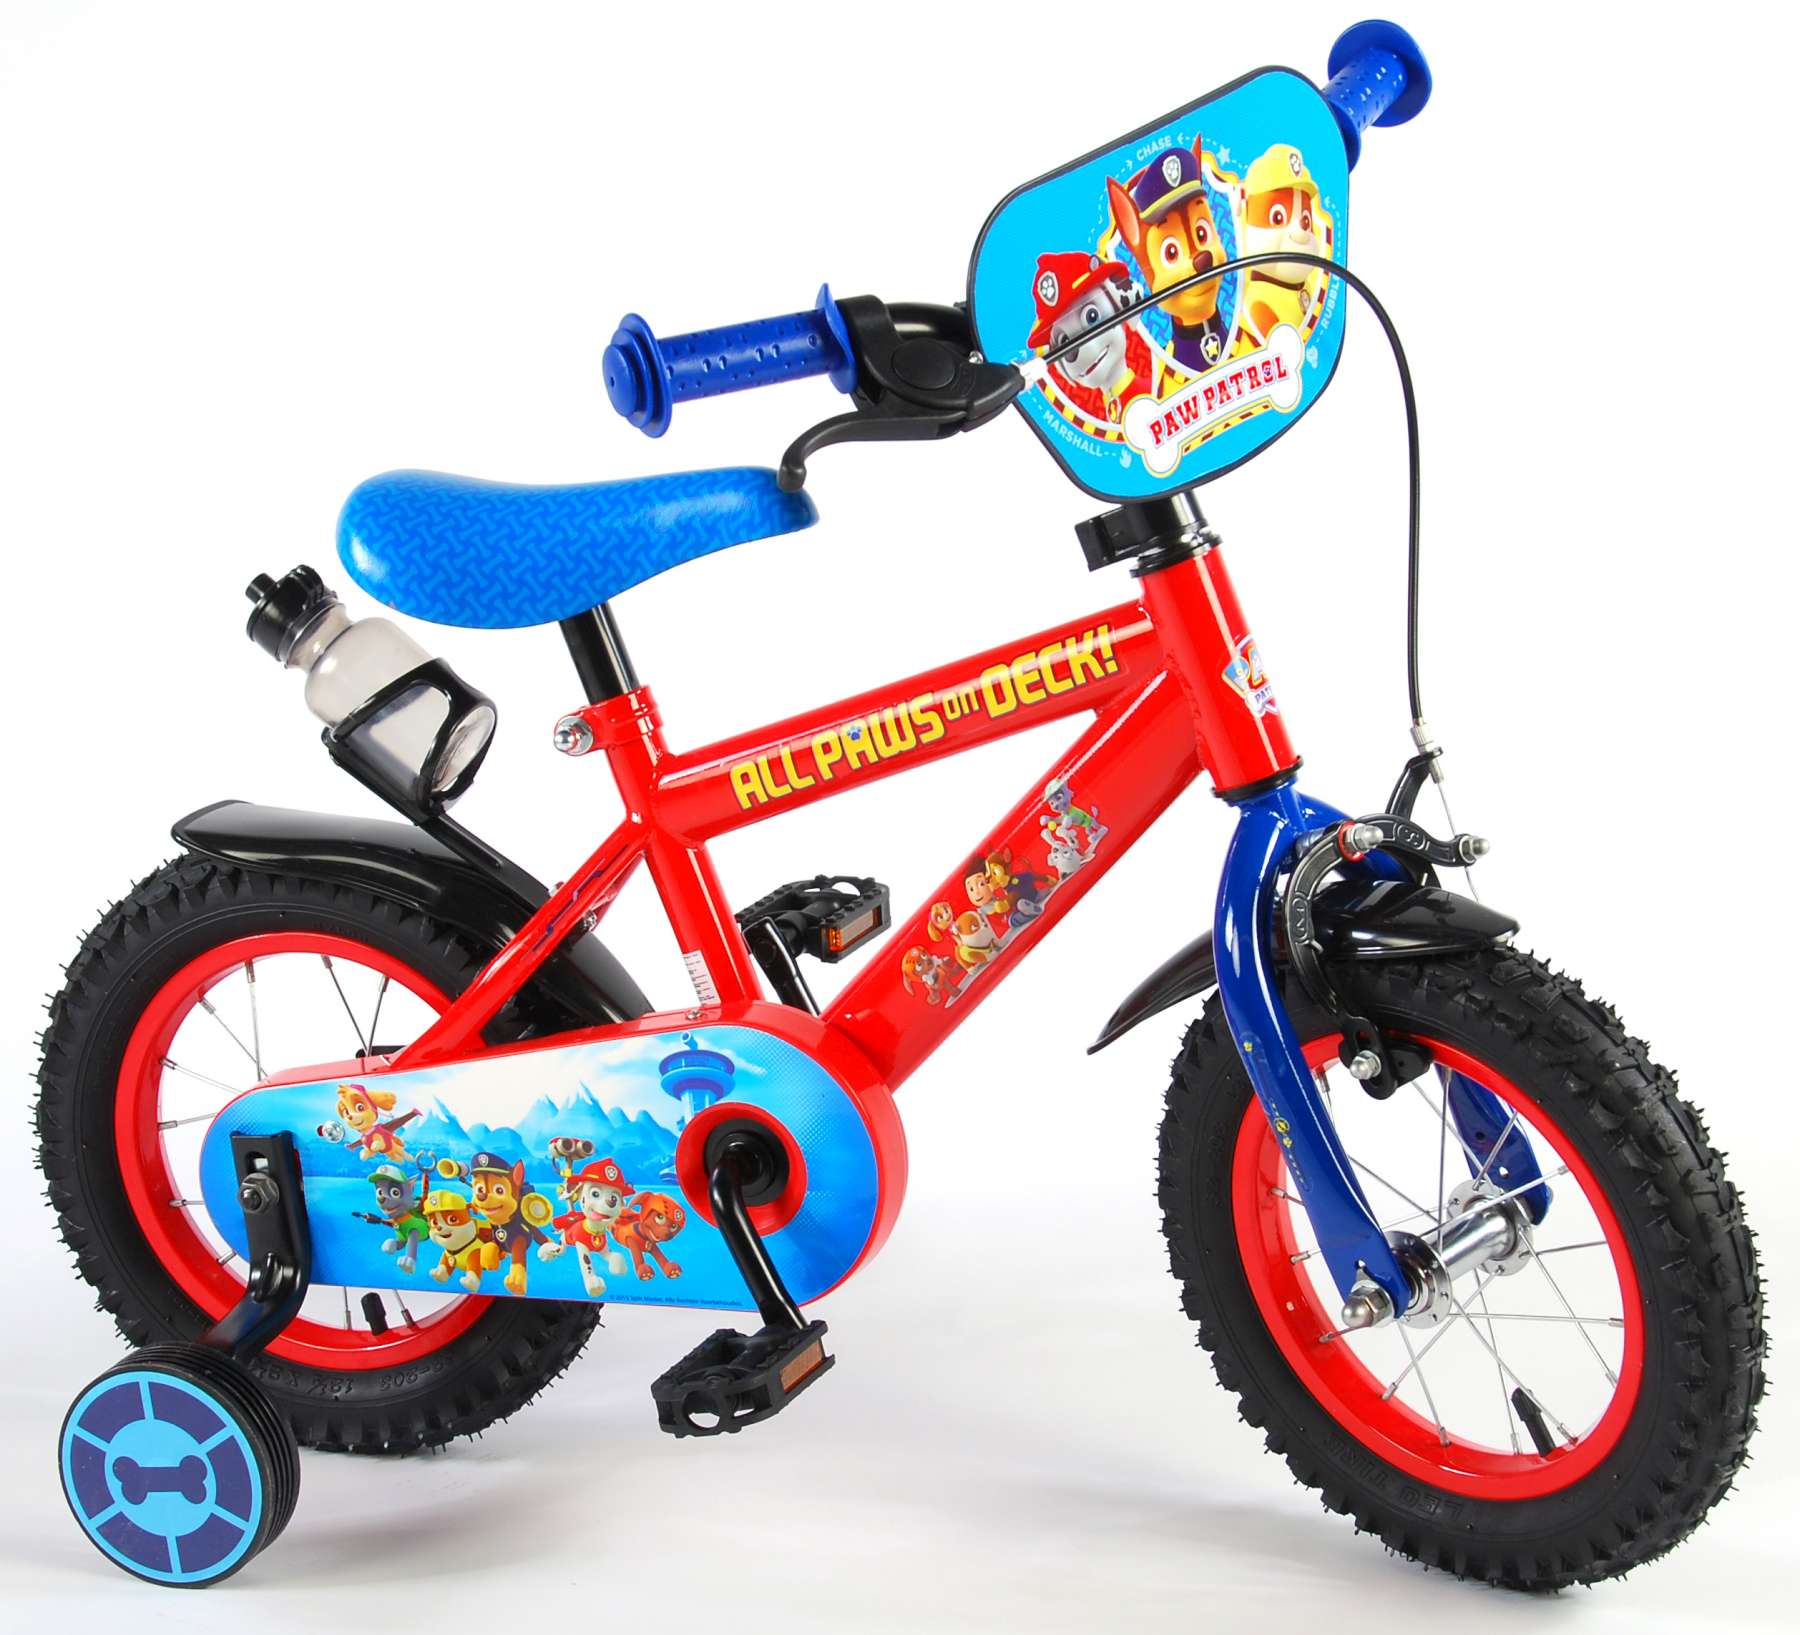 Børnecykel - - 12 tommer - Rød blå